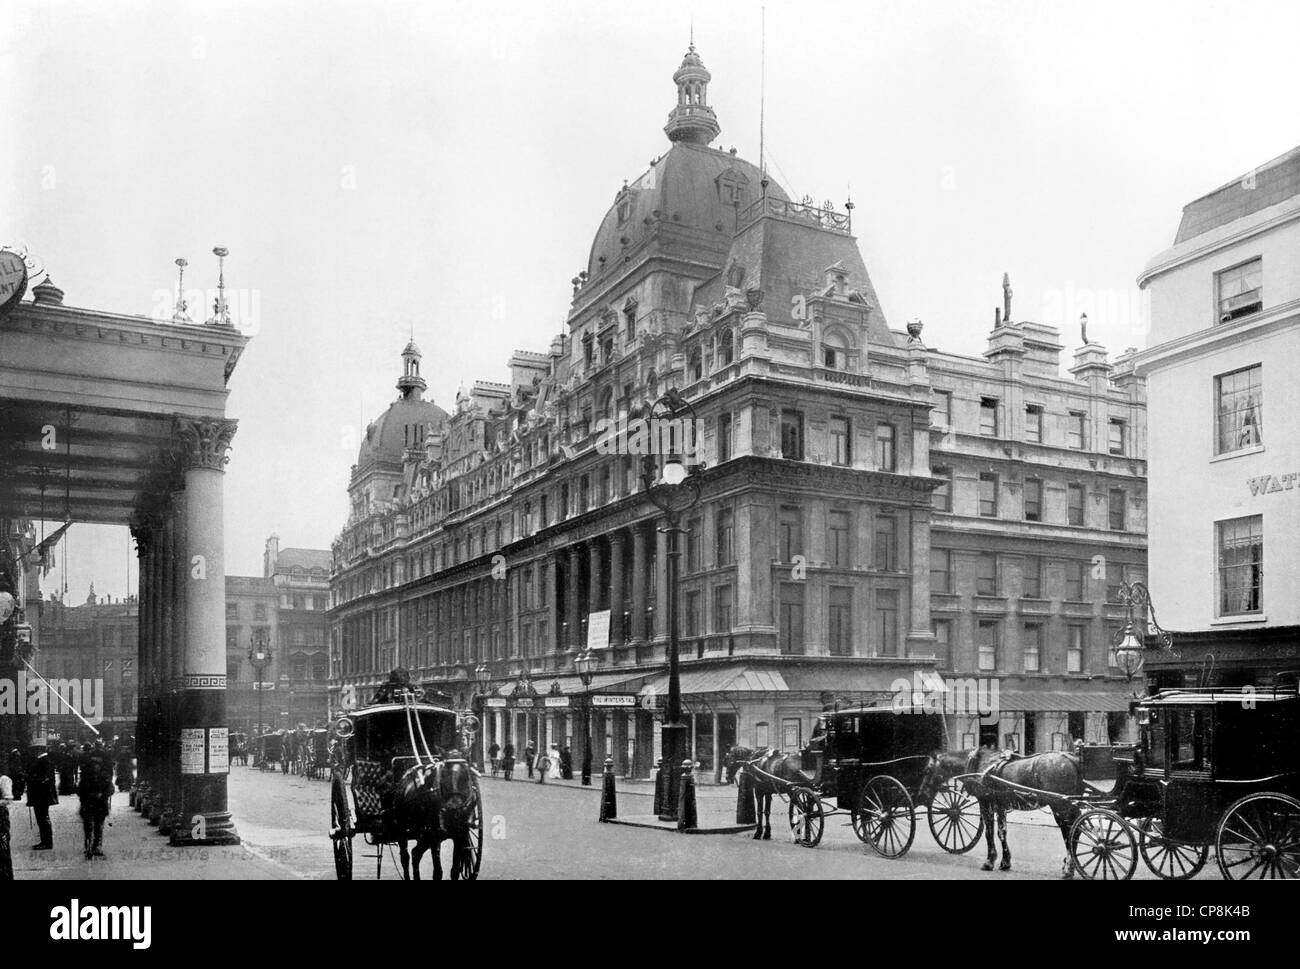 Historische Fotografie aus dem 19. Jahrhundert, ihrer Majestät "Theater, Westminster, London, England Stockfoto